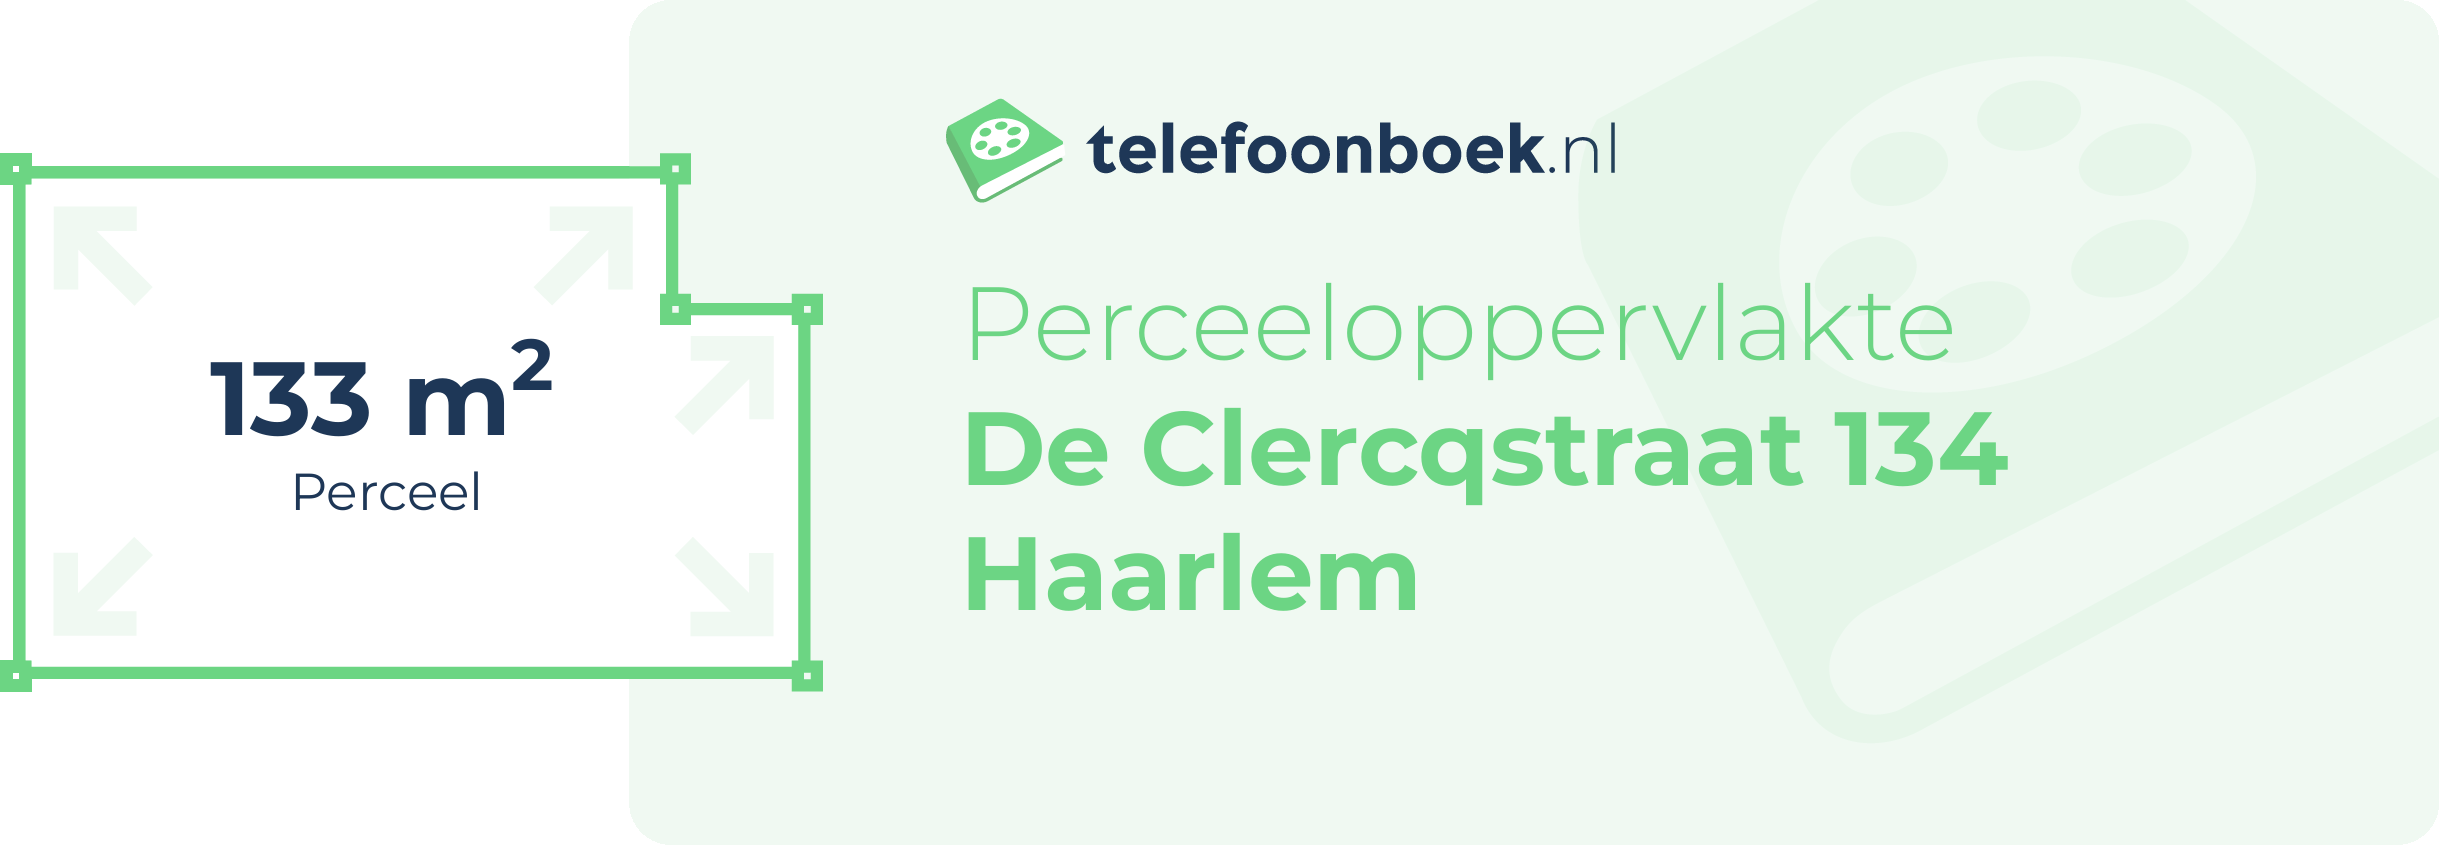 Perceeloppervlakte De Clercqstraat 134 Haarlem